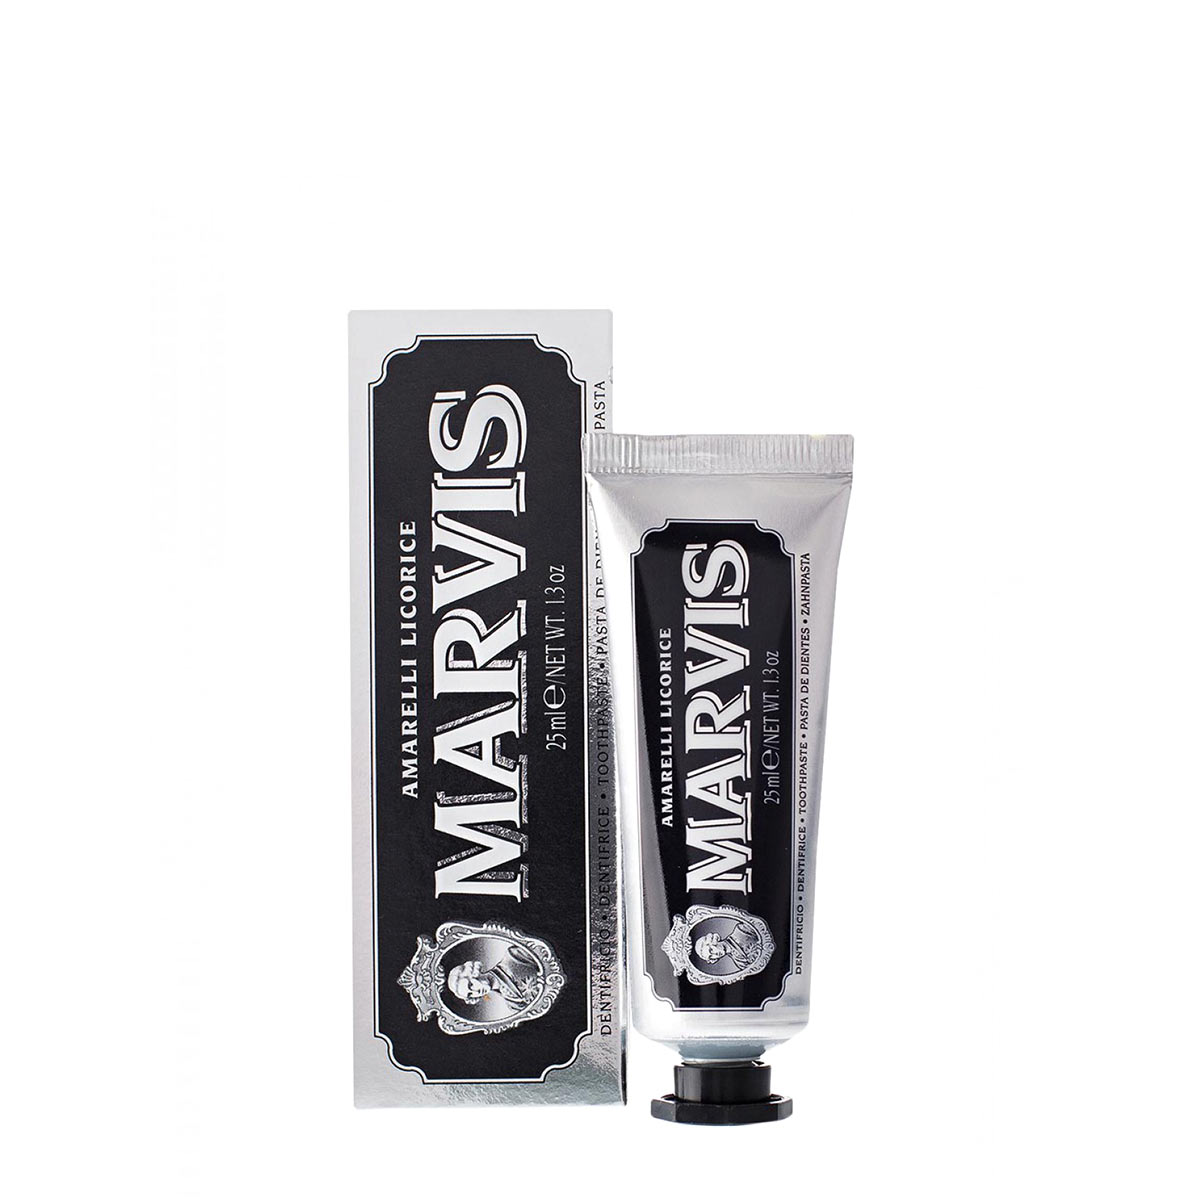 Зубная паста Marvis marvis паста зубная мята и корица marvis 25 мл